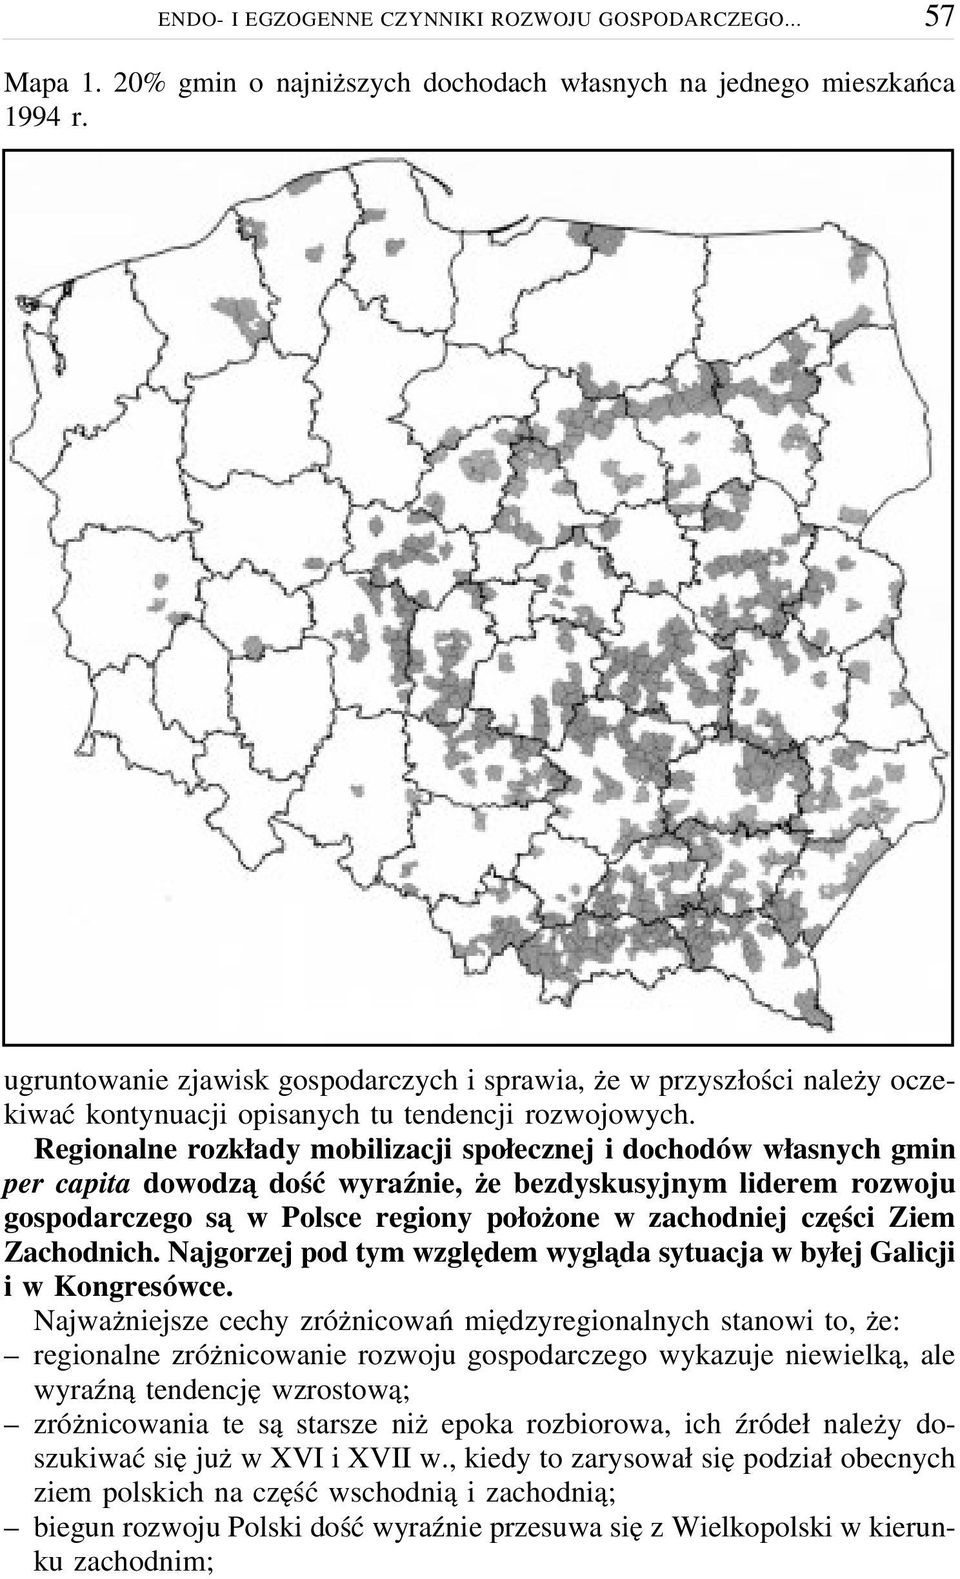 Regionalne rozkłady mobilizacji społecznej i dochodów własnych gmin per capita dowodzą dość wyraźnie, że bezdyskusyjnym liderem rozwoju gospodarczego są w Polsce regiony położone w zachodniej części